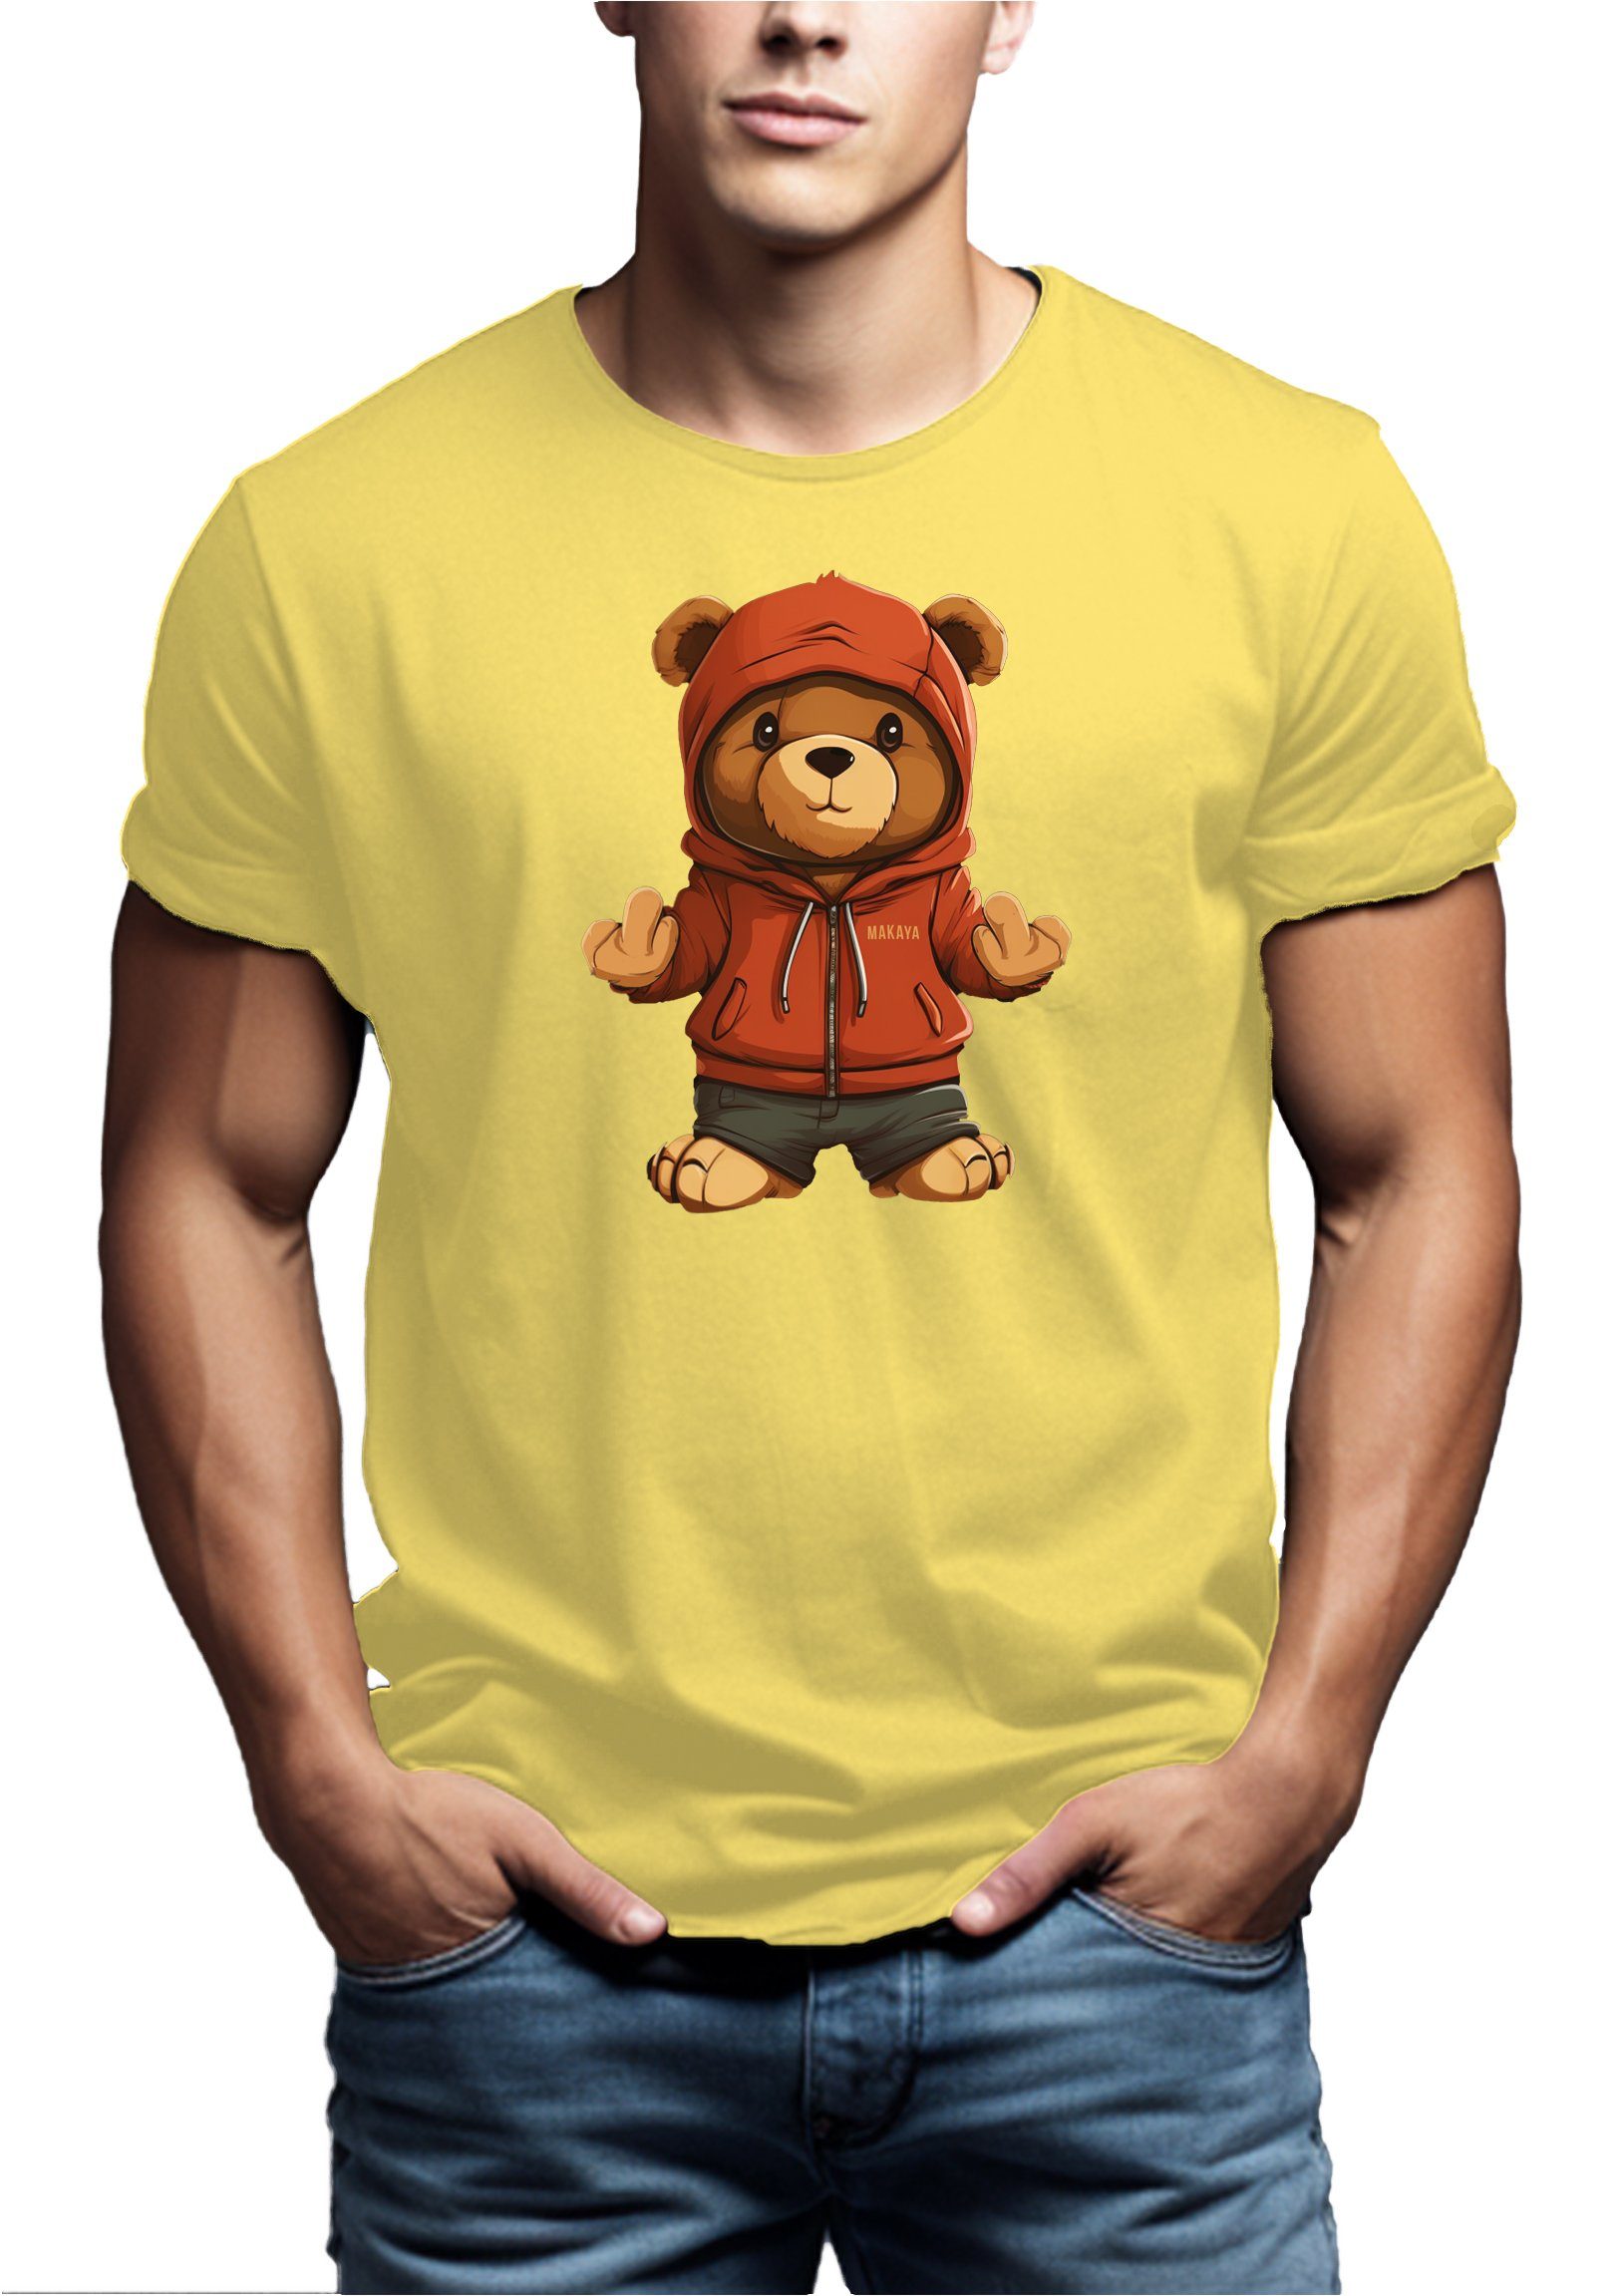 T-Shirt Jugendliche Gelb Print, mit Teddy Herren Teenager Jungs MAKAYA Teddybär Jungen Aufruck